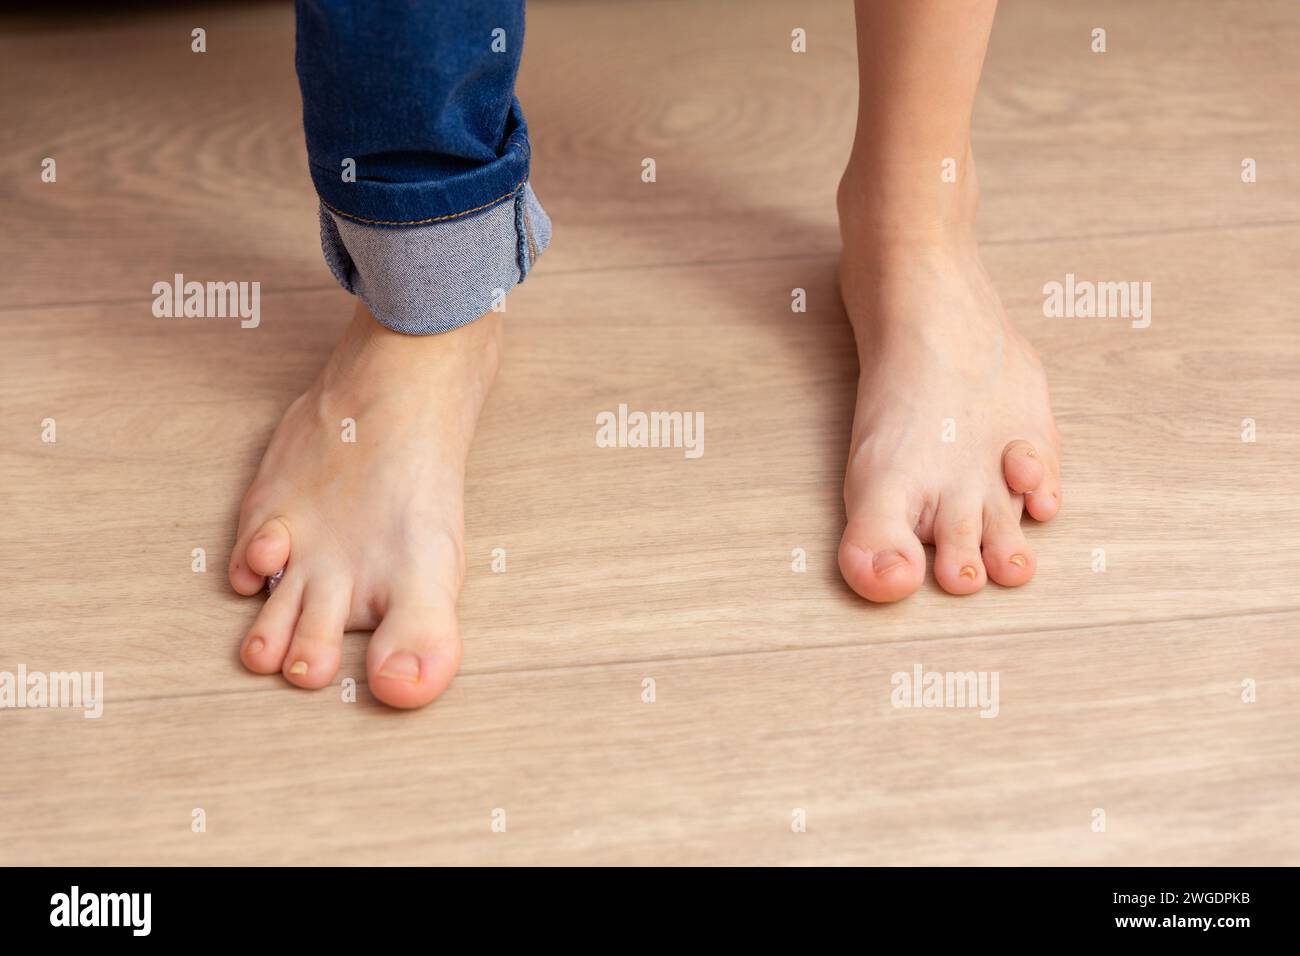 Nahaufnahme der Füße eines dreizehnjährigen Mädchens mit Geburtsfehler. Eine Behinderung verhindert, dass das Mädchen normal läuft und sich entwickelt. Stockfoto